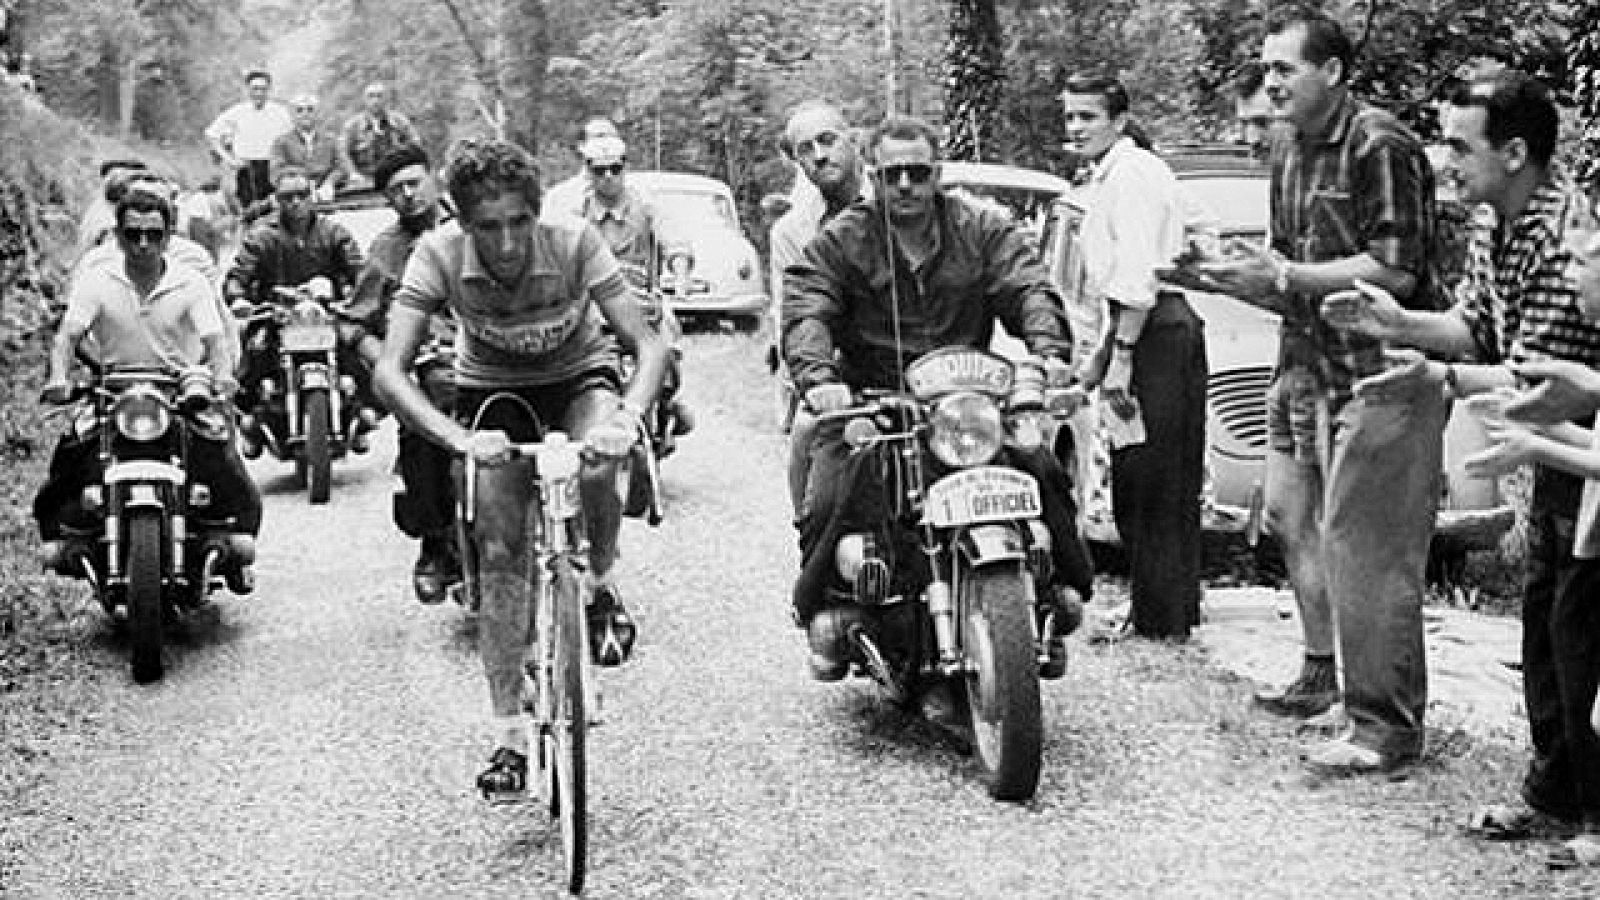 Consagrado como un especialista en la montaña, Bahamontes venció en el Tour de Francia 1959, aunque inicialmente no partía como favorito. Sin embargo, una larga escapada en los Pirineos y su victoria en la cronoescalada de Puy-de-Dôme le supusieron u